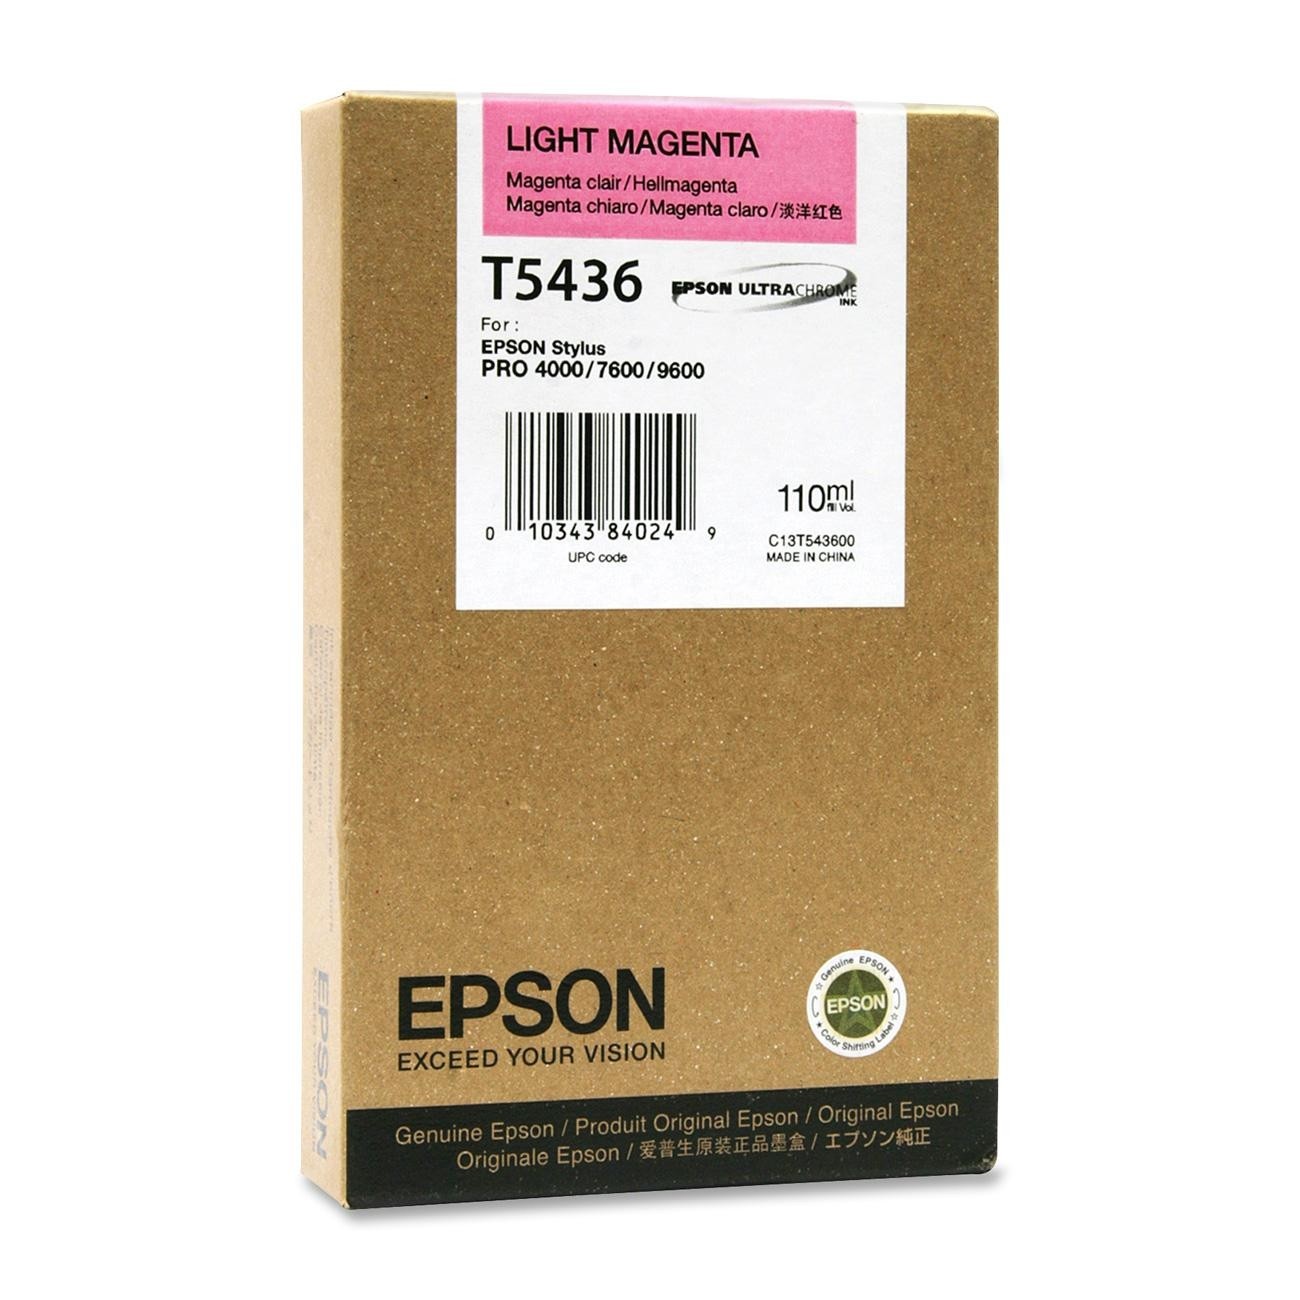 Epson T543600  cartuccia magenta-chiaro 110ml